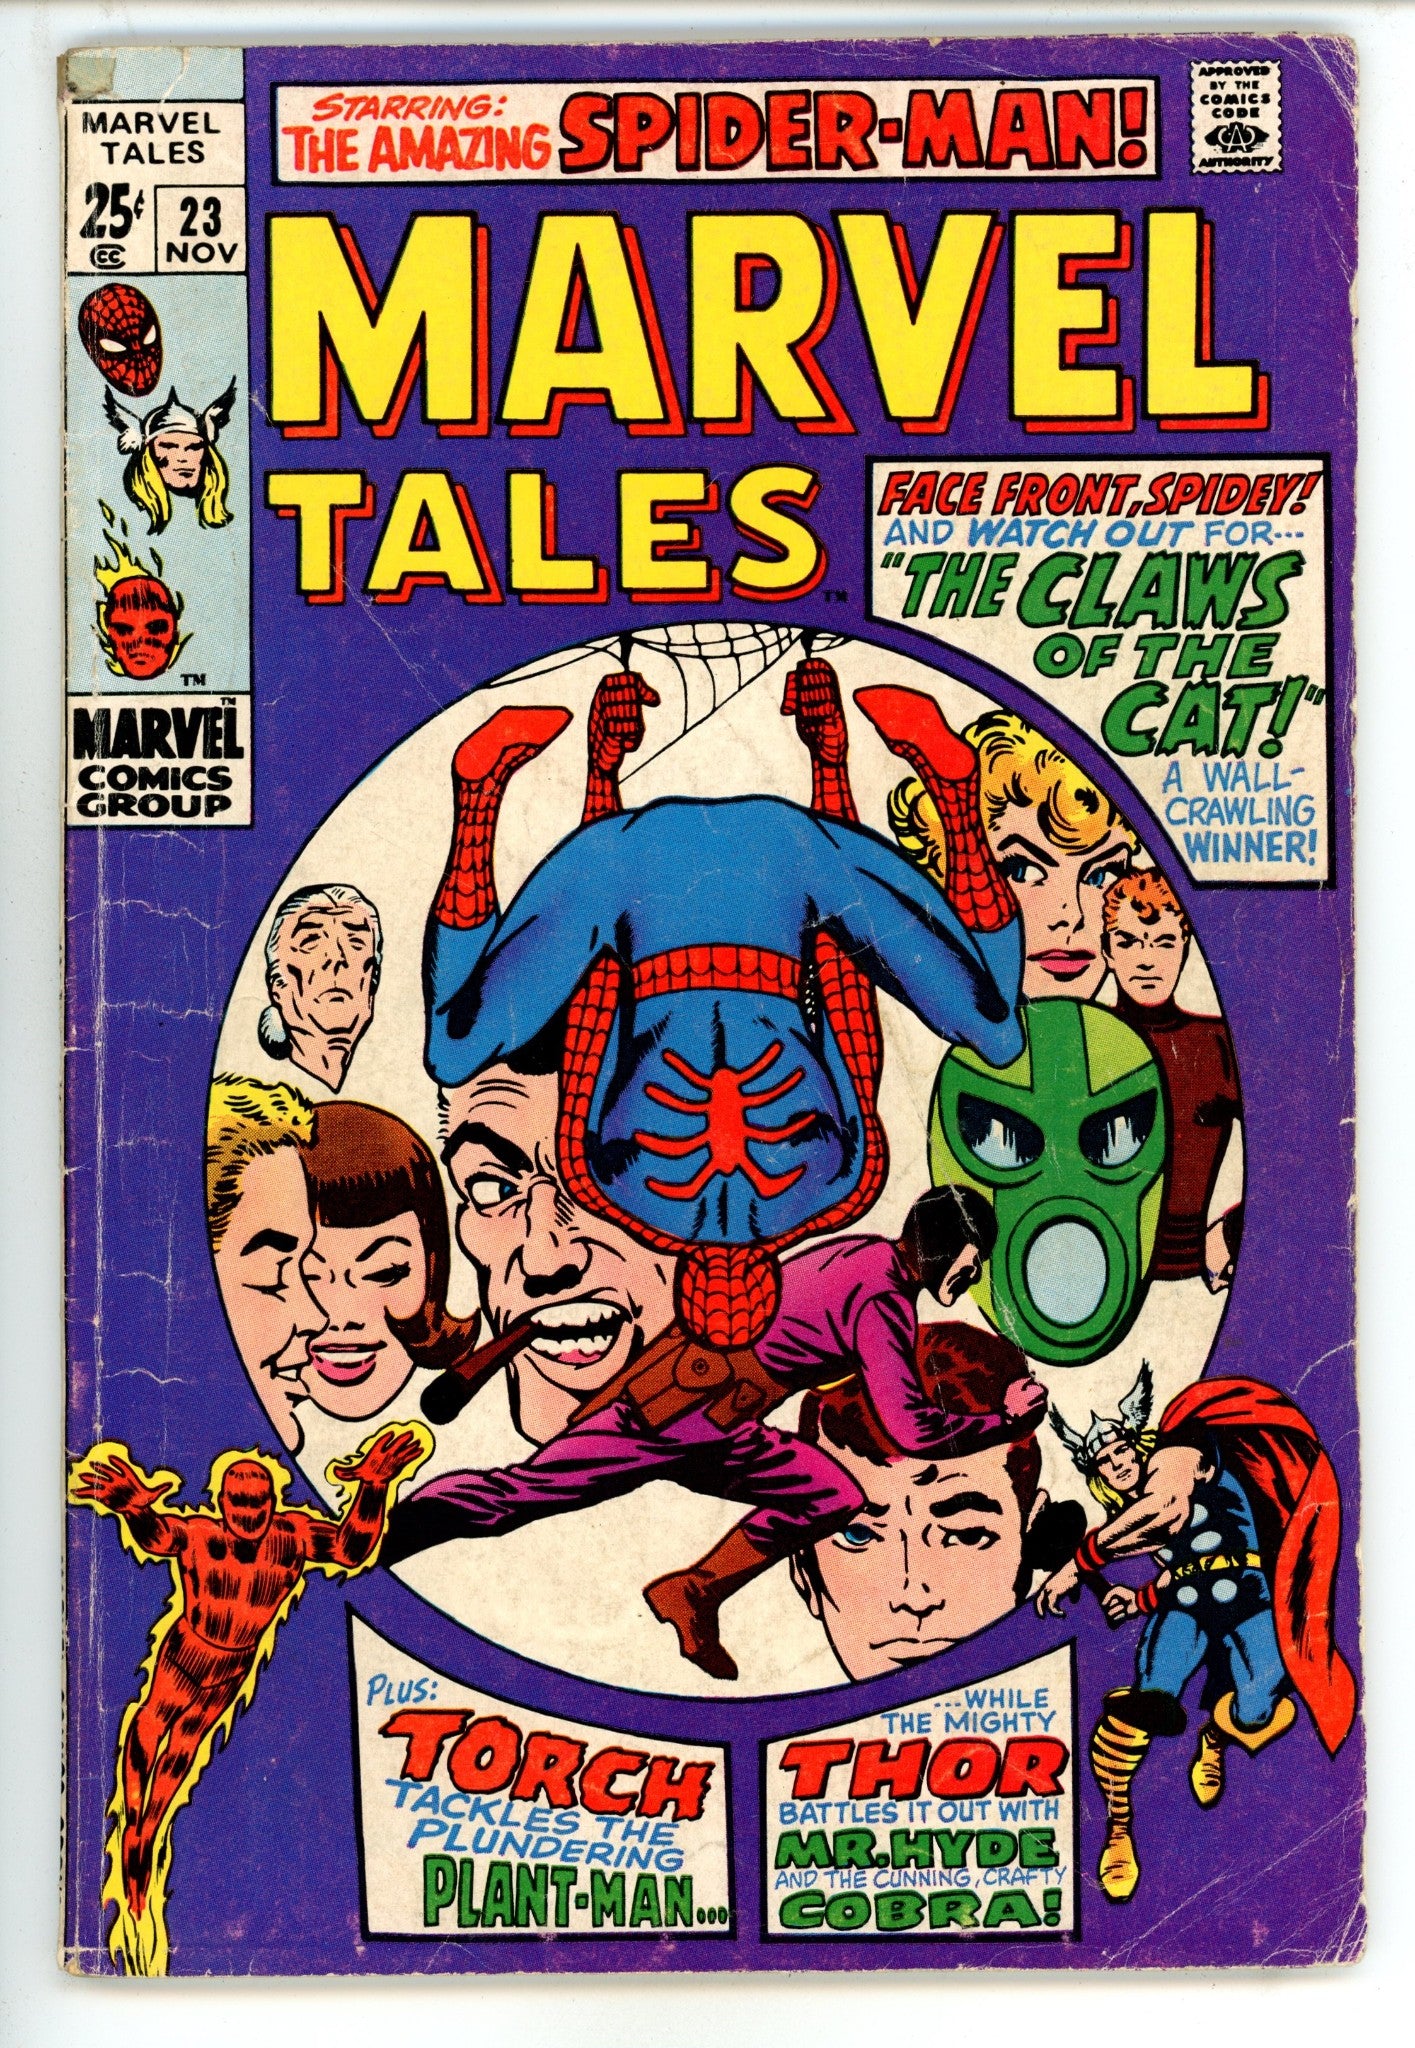 Marvel Tales Vol 2 23 VG- (3.5) (1969) 